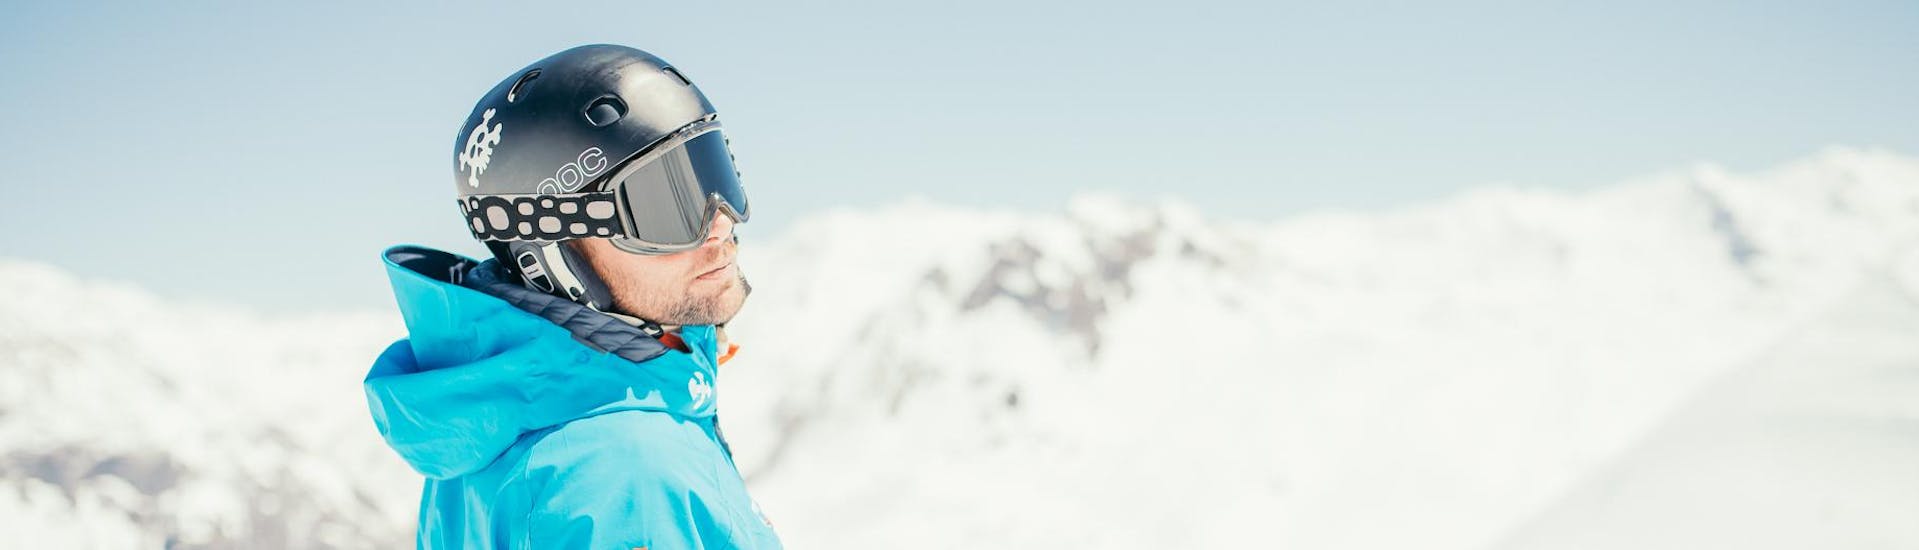 Clases de esquí para adultos a partir de 14 años para todos los niveles.